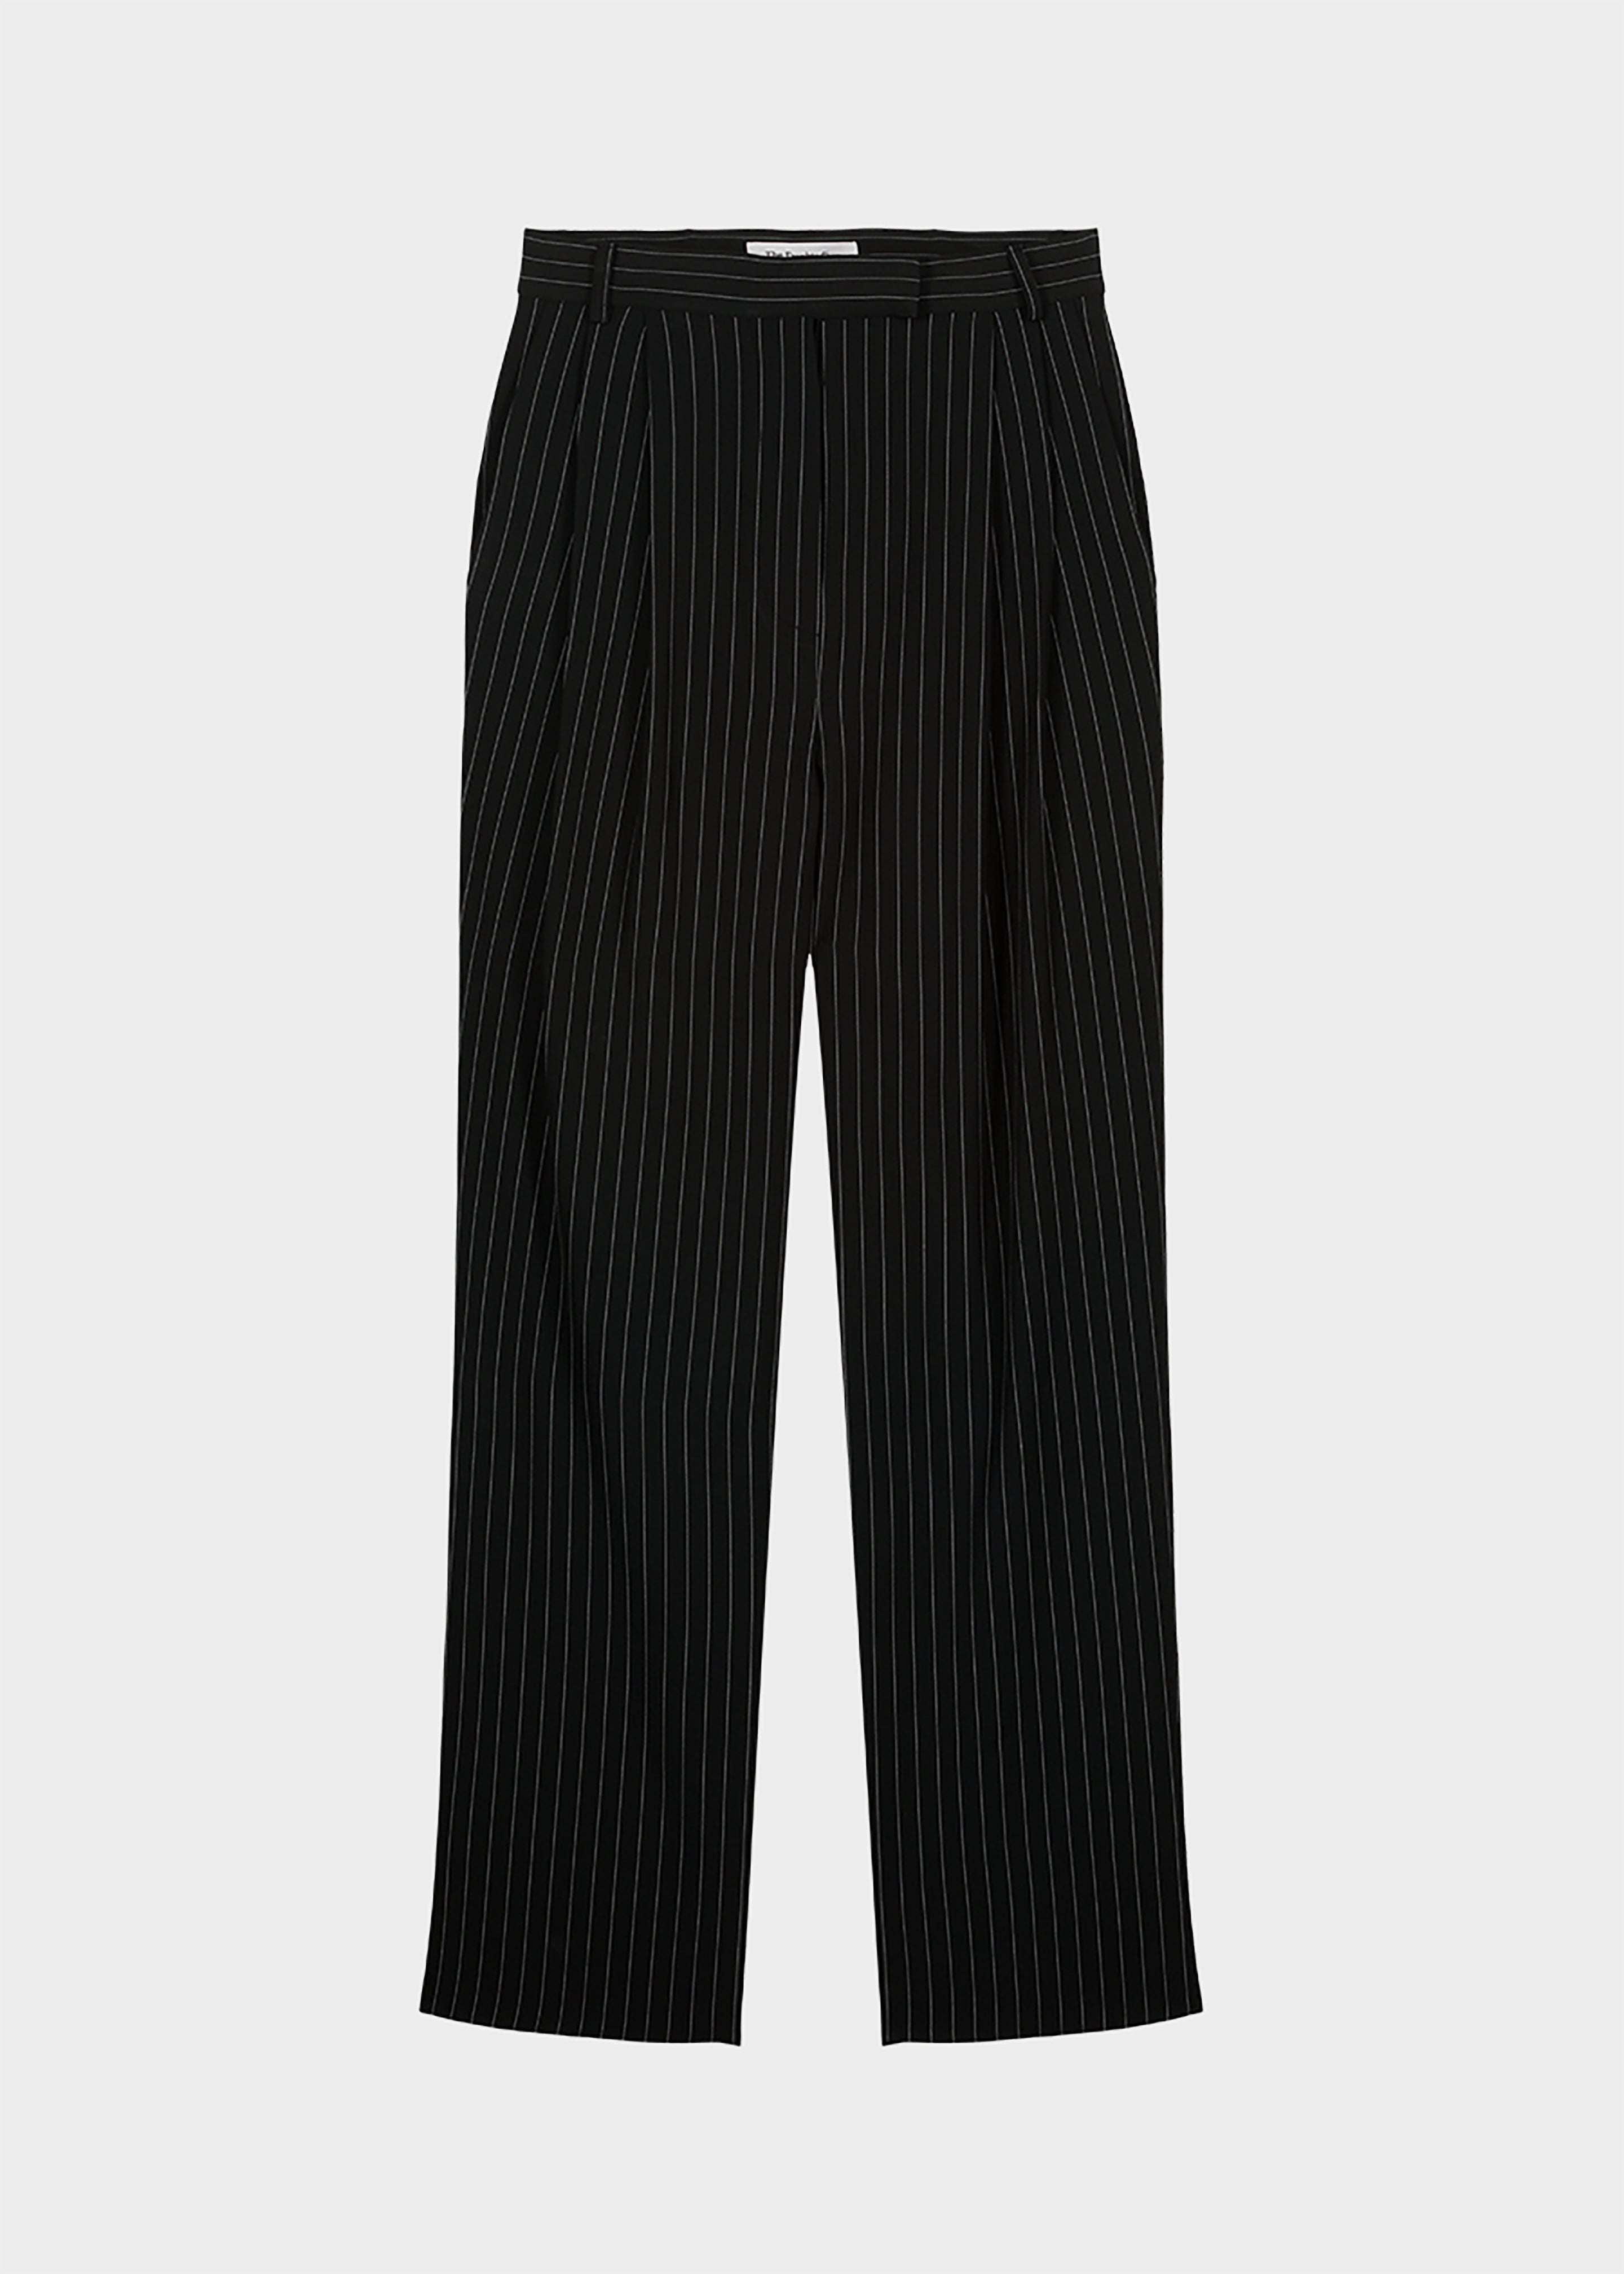 Bea Fluid Pinstripe Suit Pants - Black/White - 8